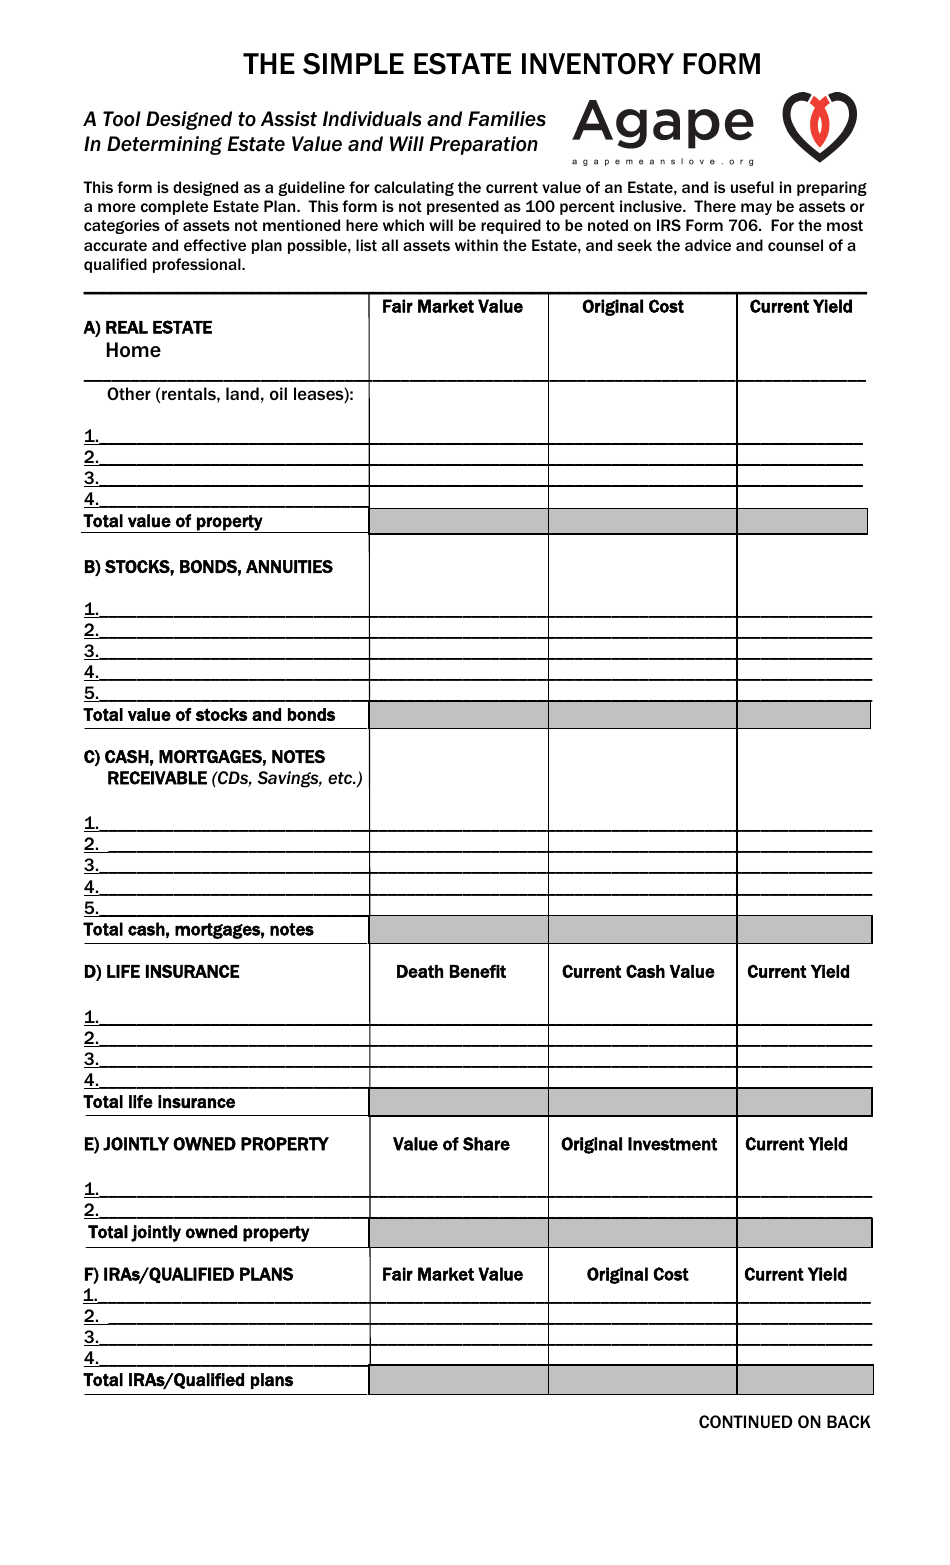 checklist in estate planning template